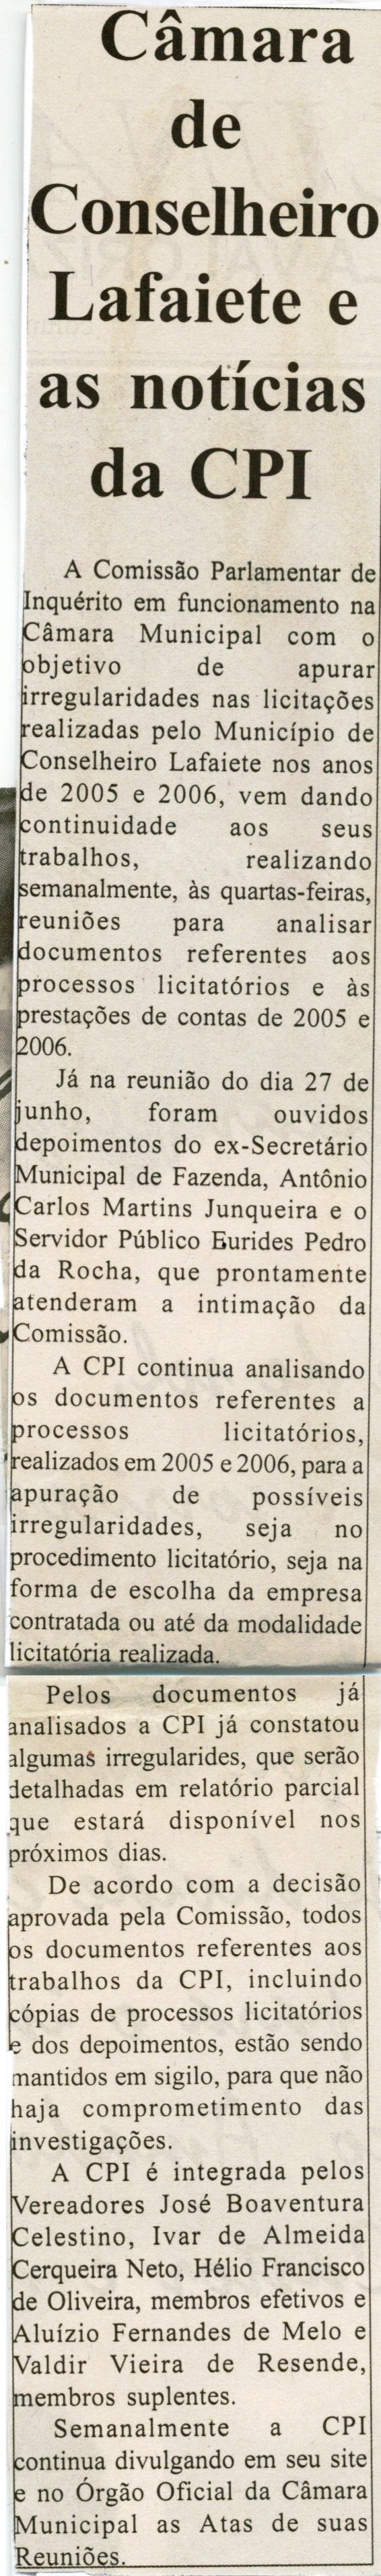 Câmara de Conselheiro lafaiete e as notícias da CPI. Jornal Nova Gazeta, Conselheiro lafaiete, 30 jun. 2007, 468ª ed., p. 03.